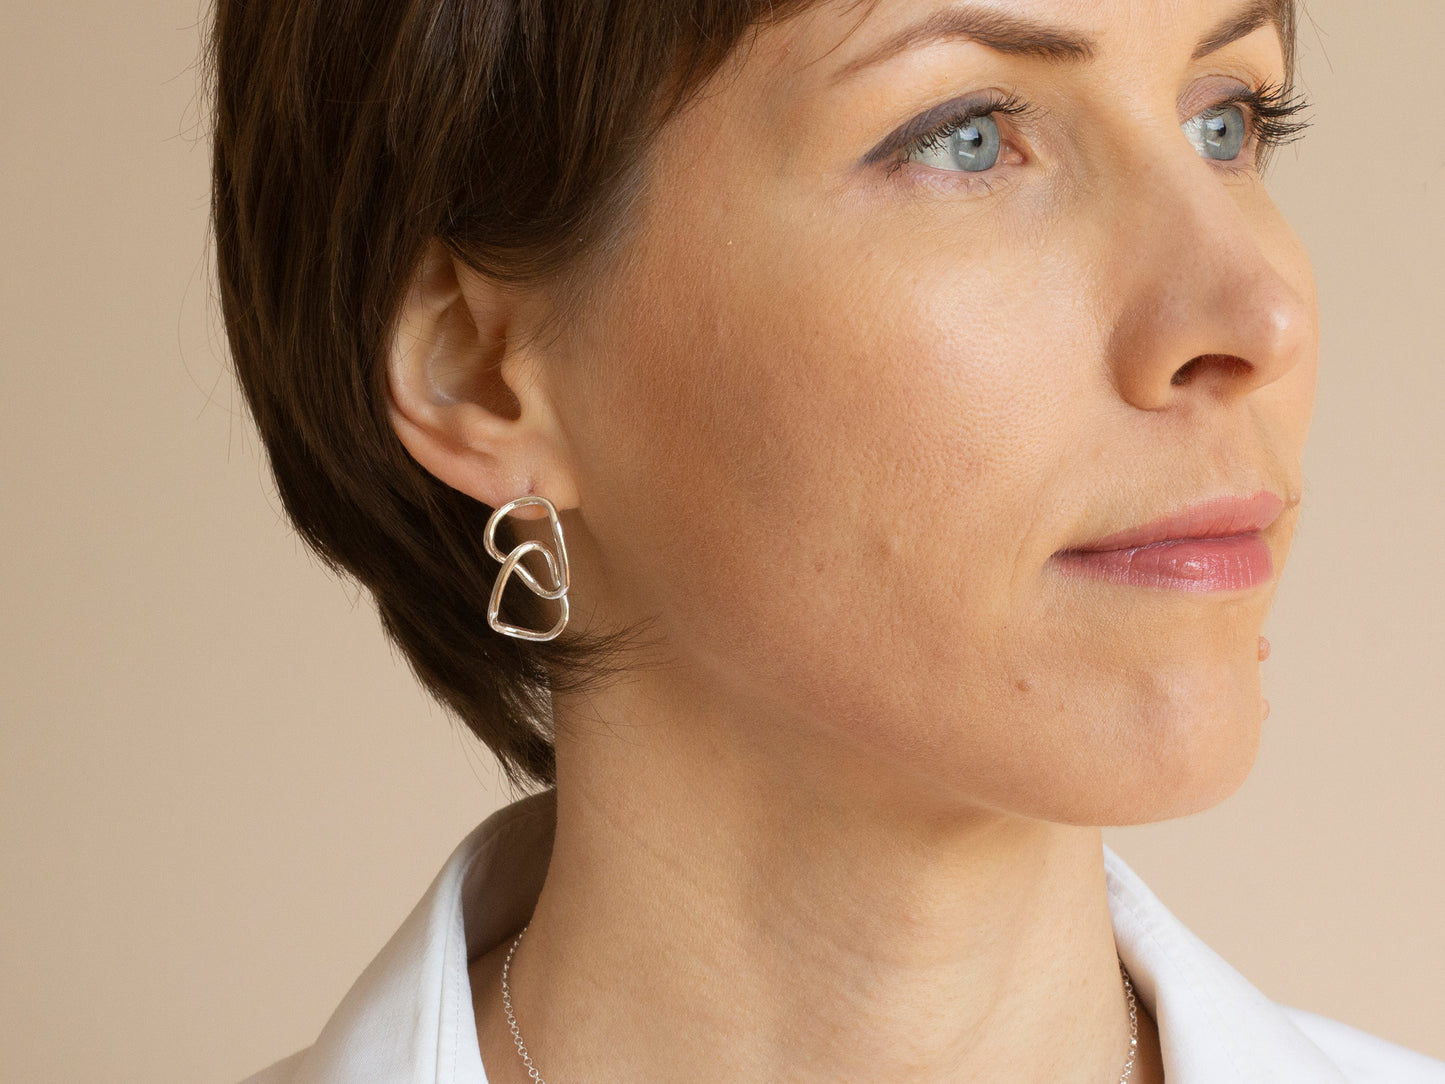 Interlinked silver earrings